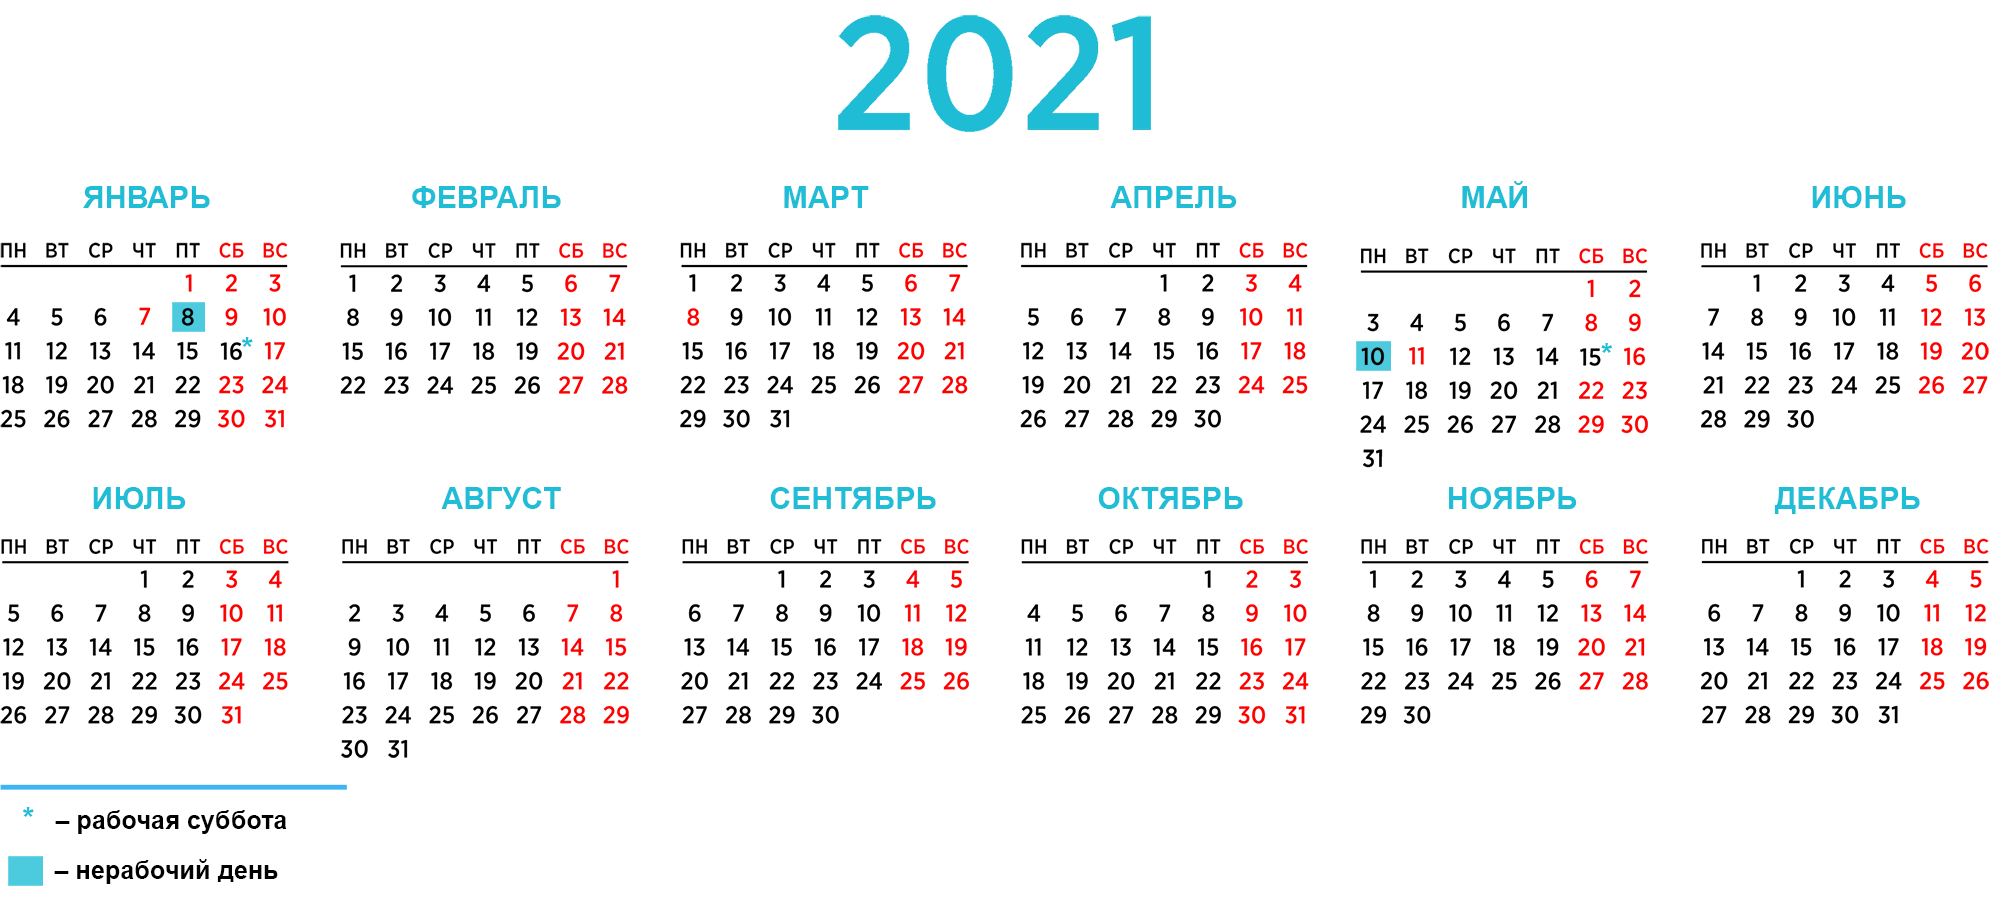 Сколько дней назад было 30 января. Производственный календарь 2021 Беларусь. Производственный календарь 2021. Рабочий календарь на 2021 год. Календарь на 2021 год с праздниками и выходными Беларусь.